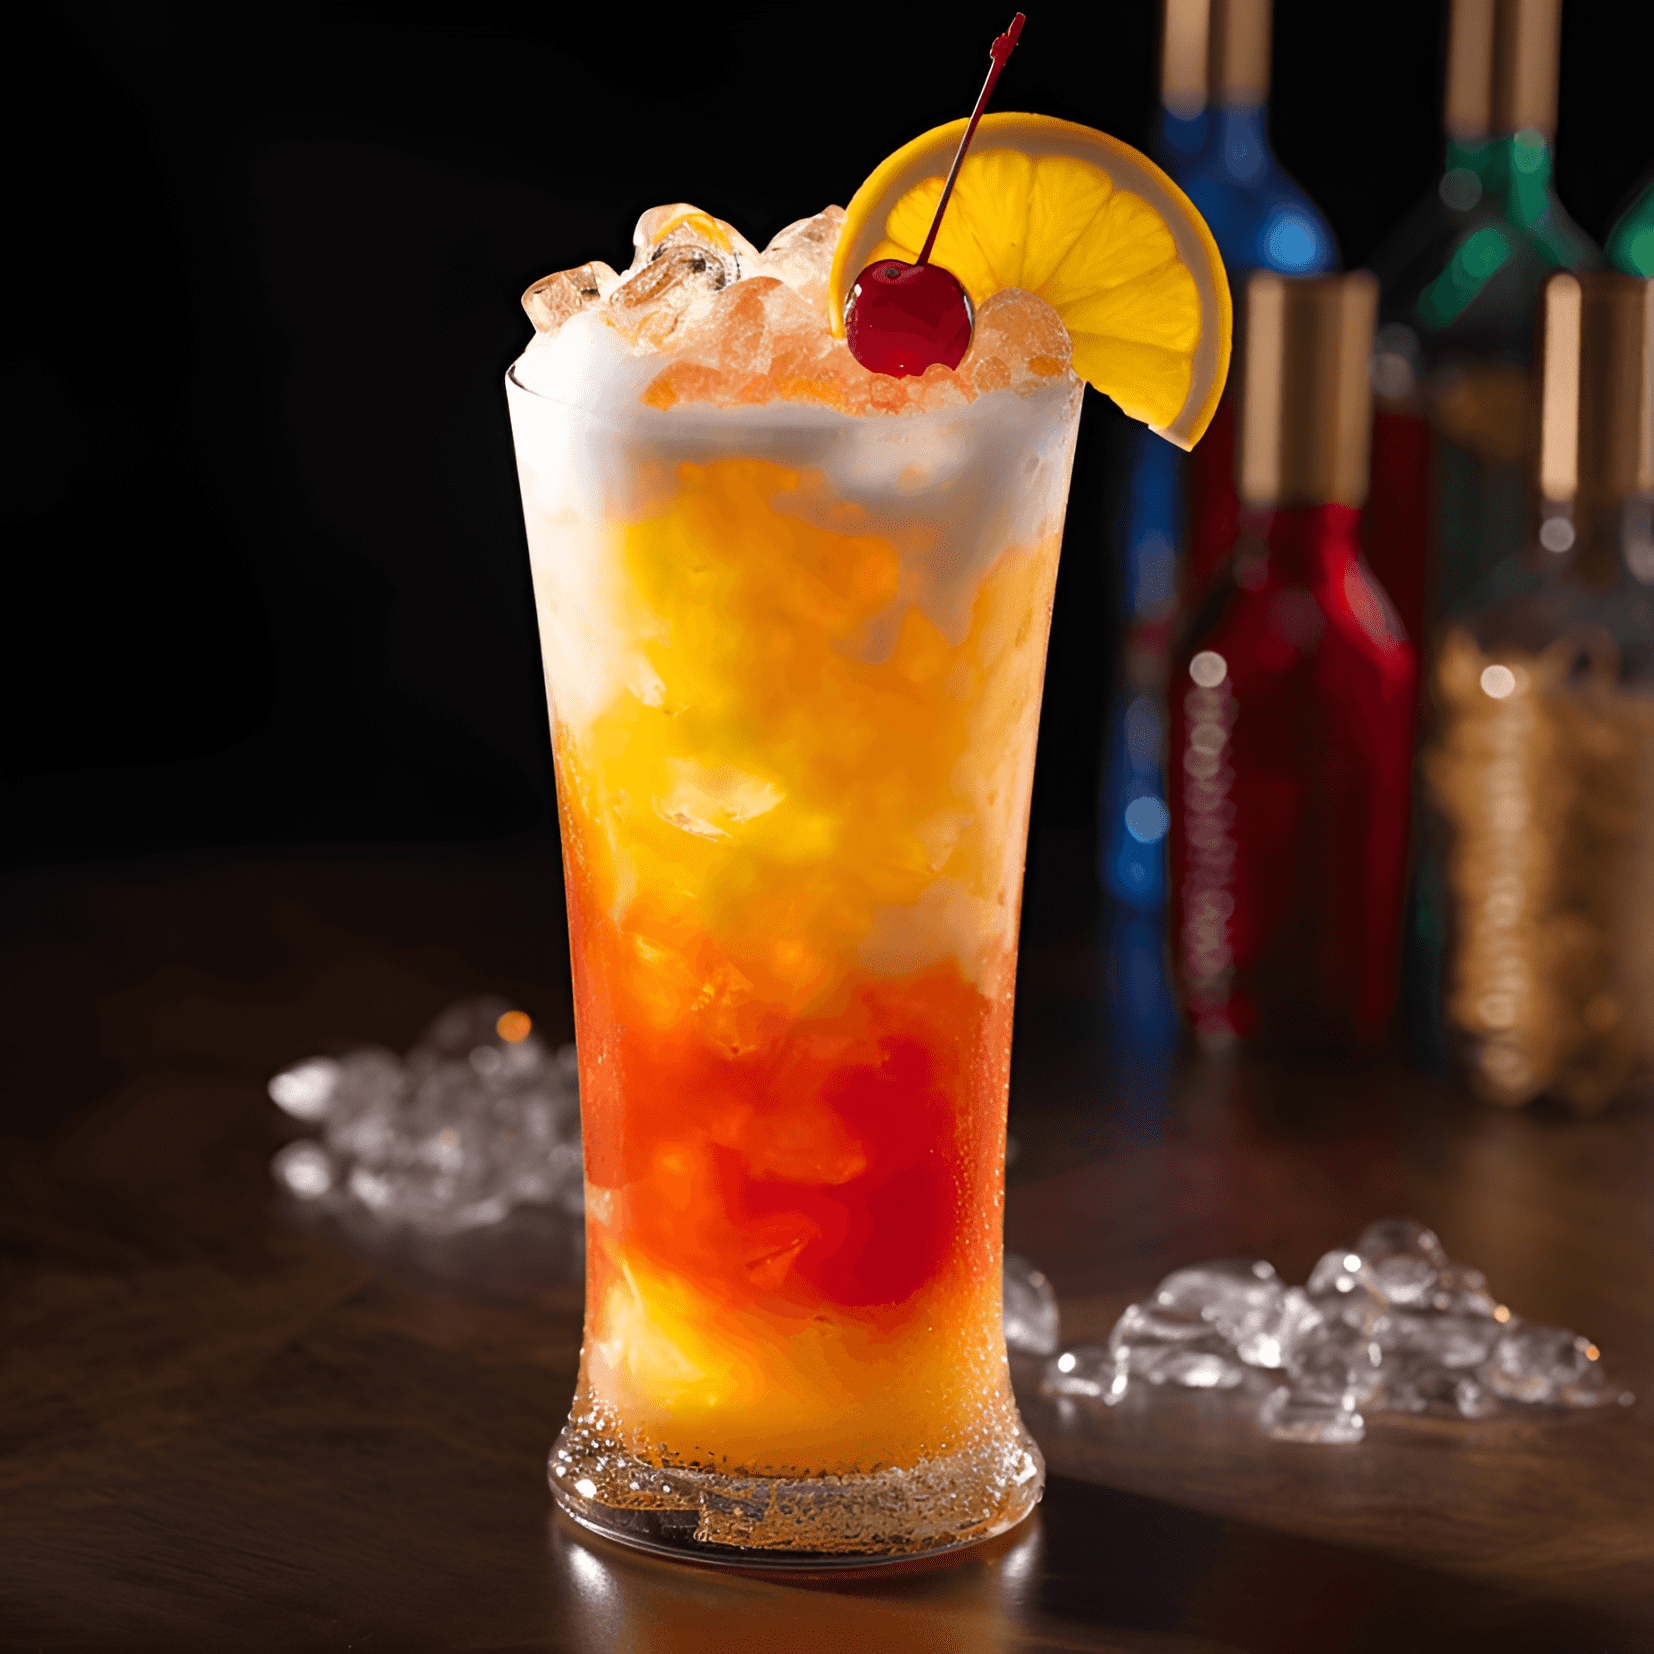 Rum Runner Cóctel Receta - El Rum Runner es un cóctel dulce y afrutado con un toque de acidez. Sus sabores son una armoniosa mezcla de frutas tropicales, con el ron proporcionando una base suave y cálida. La bebida es refrescante y satisfactoria, lo que la hace perfecta para beber en un día caluroso de verano.